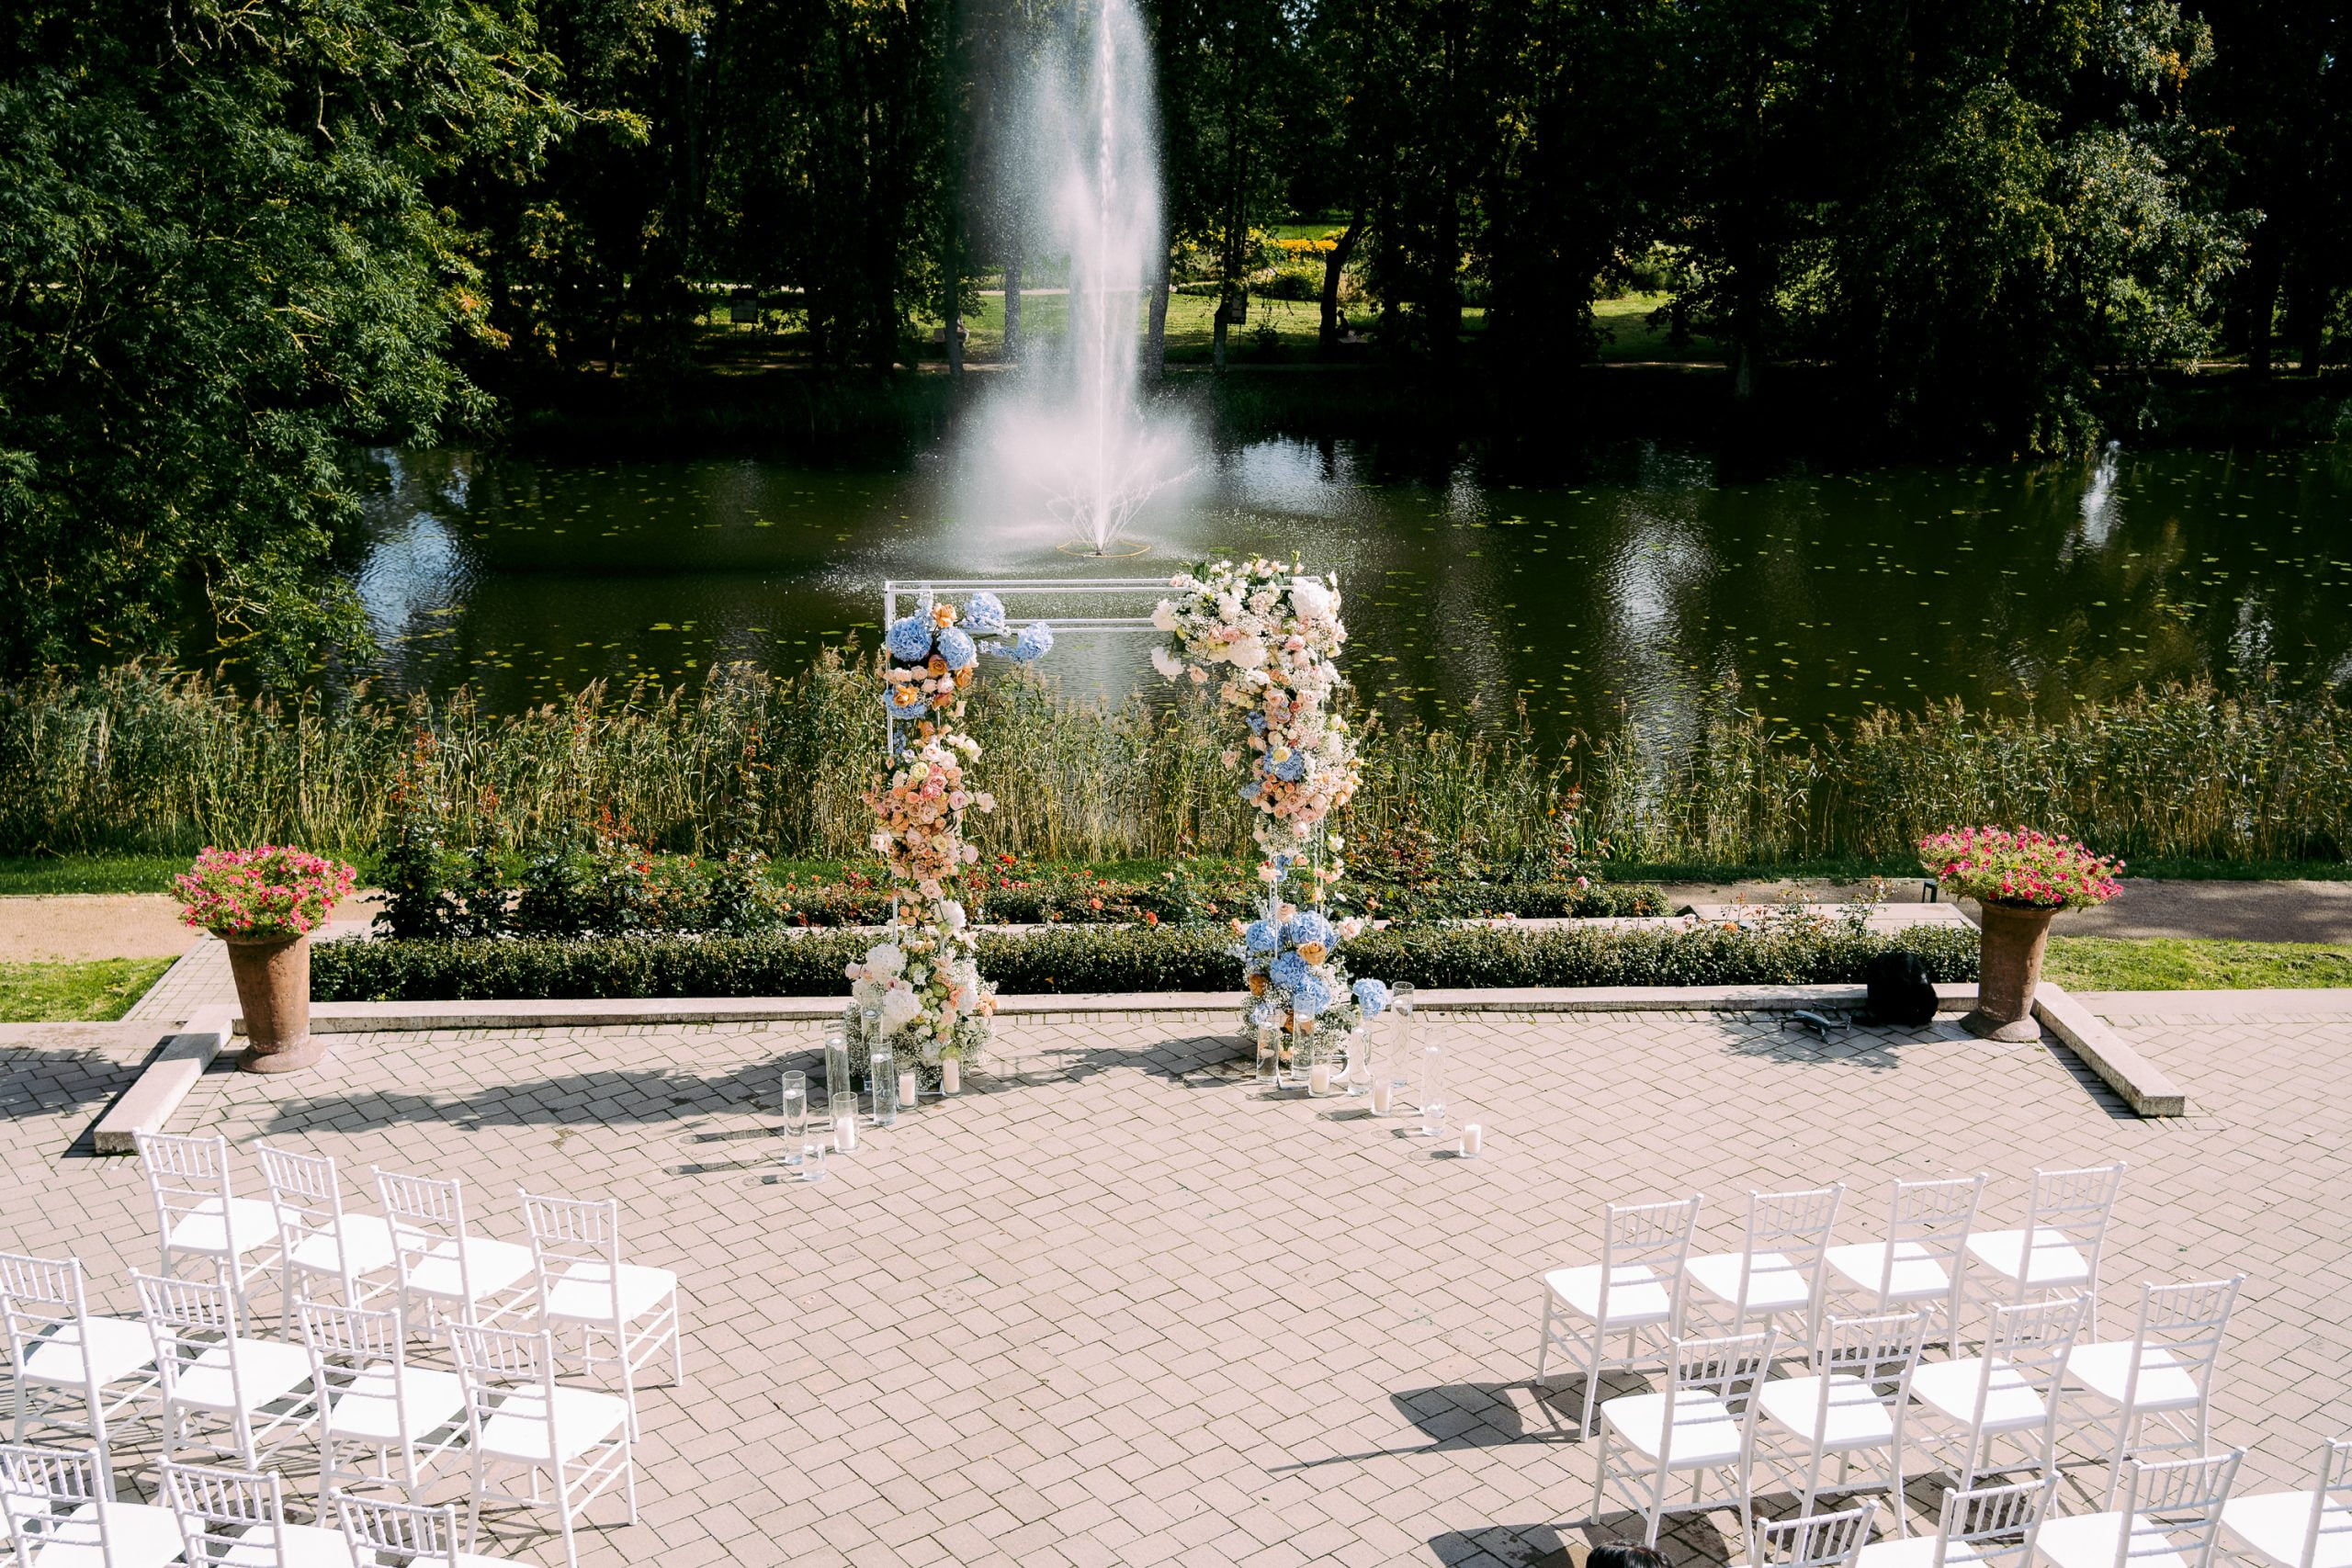 wedding ceremony decor